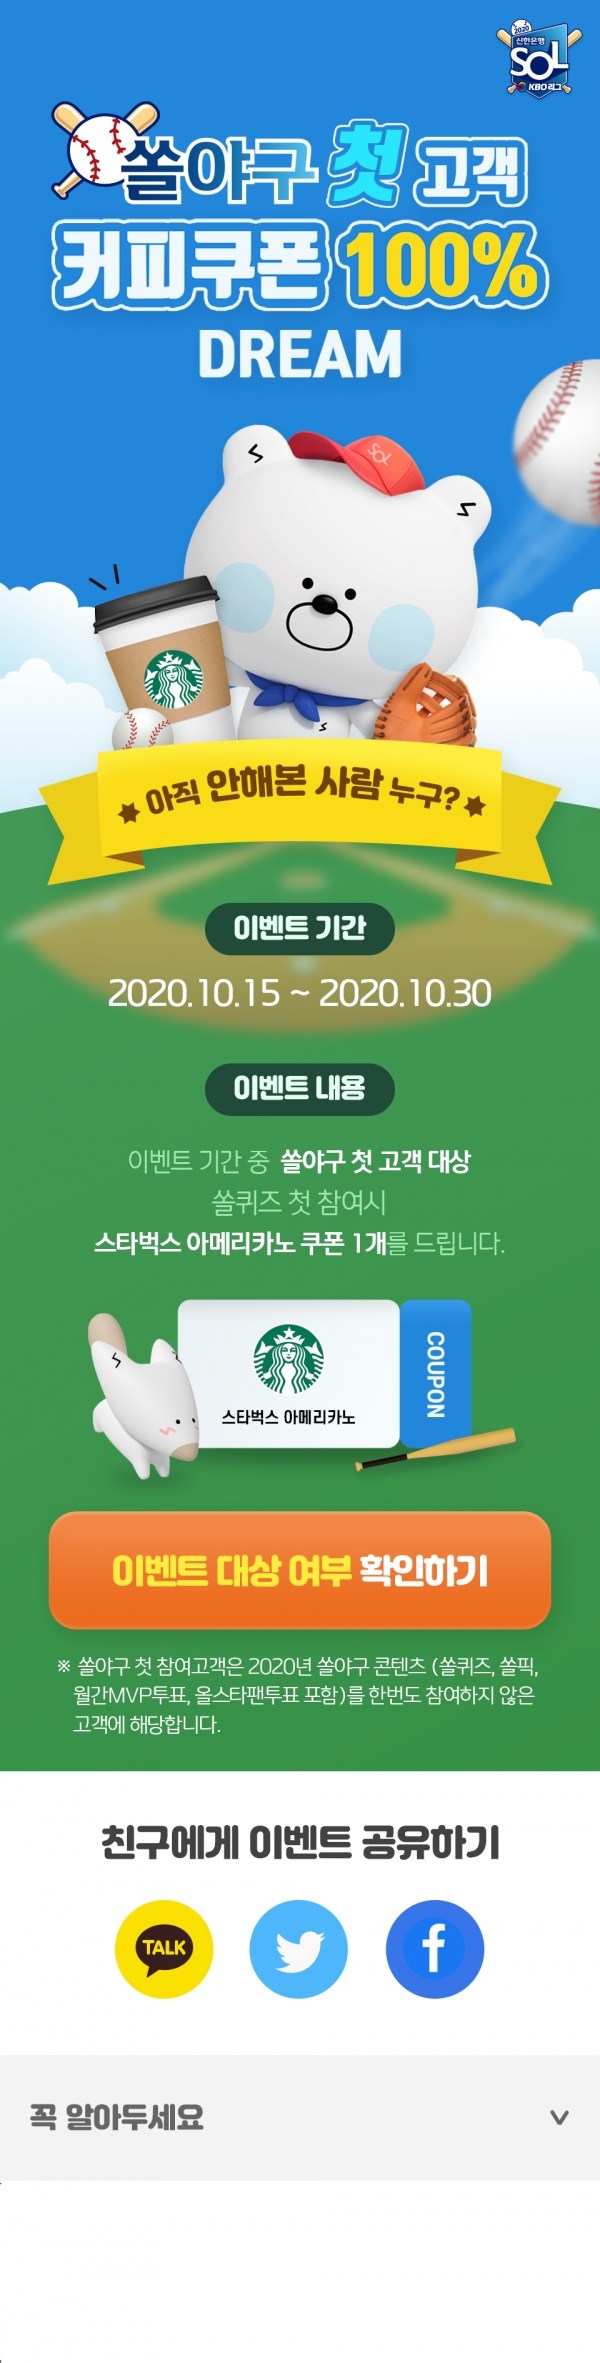 신한은행, ‘쏠야구 첫고객 커피쿠폰 100% Dream’ 이벤트 진행